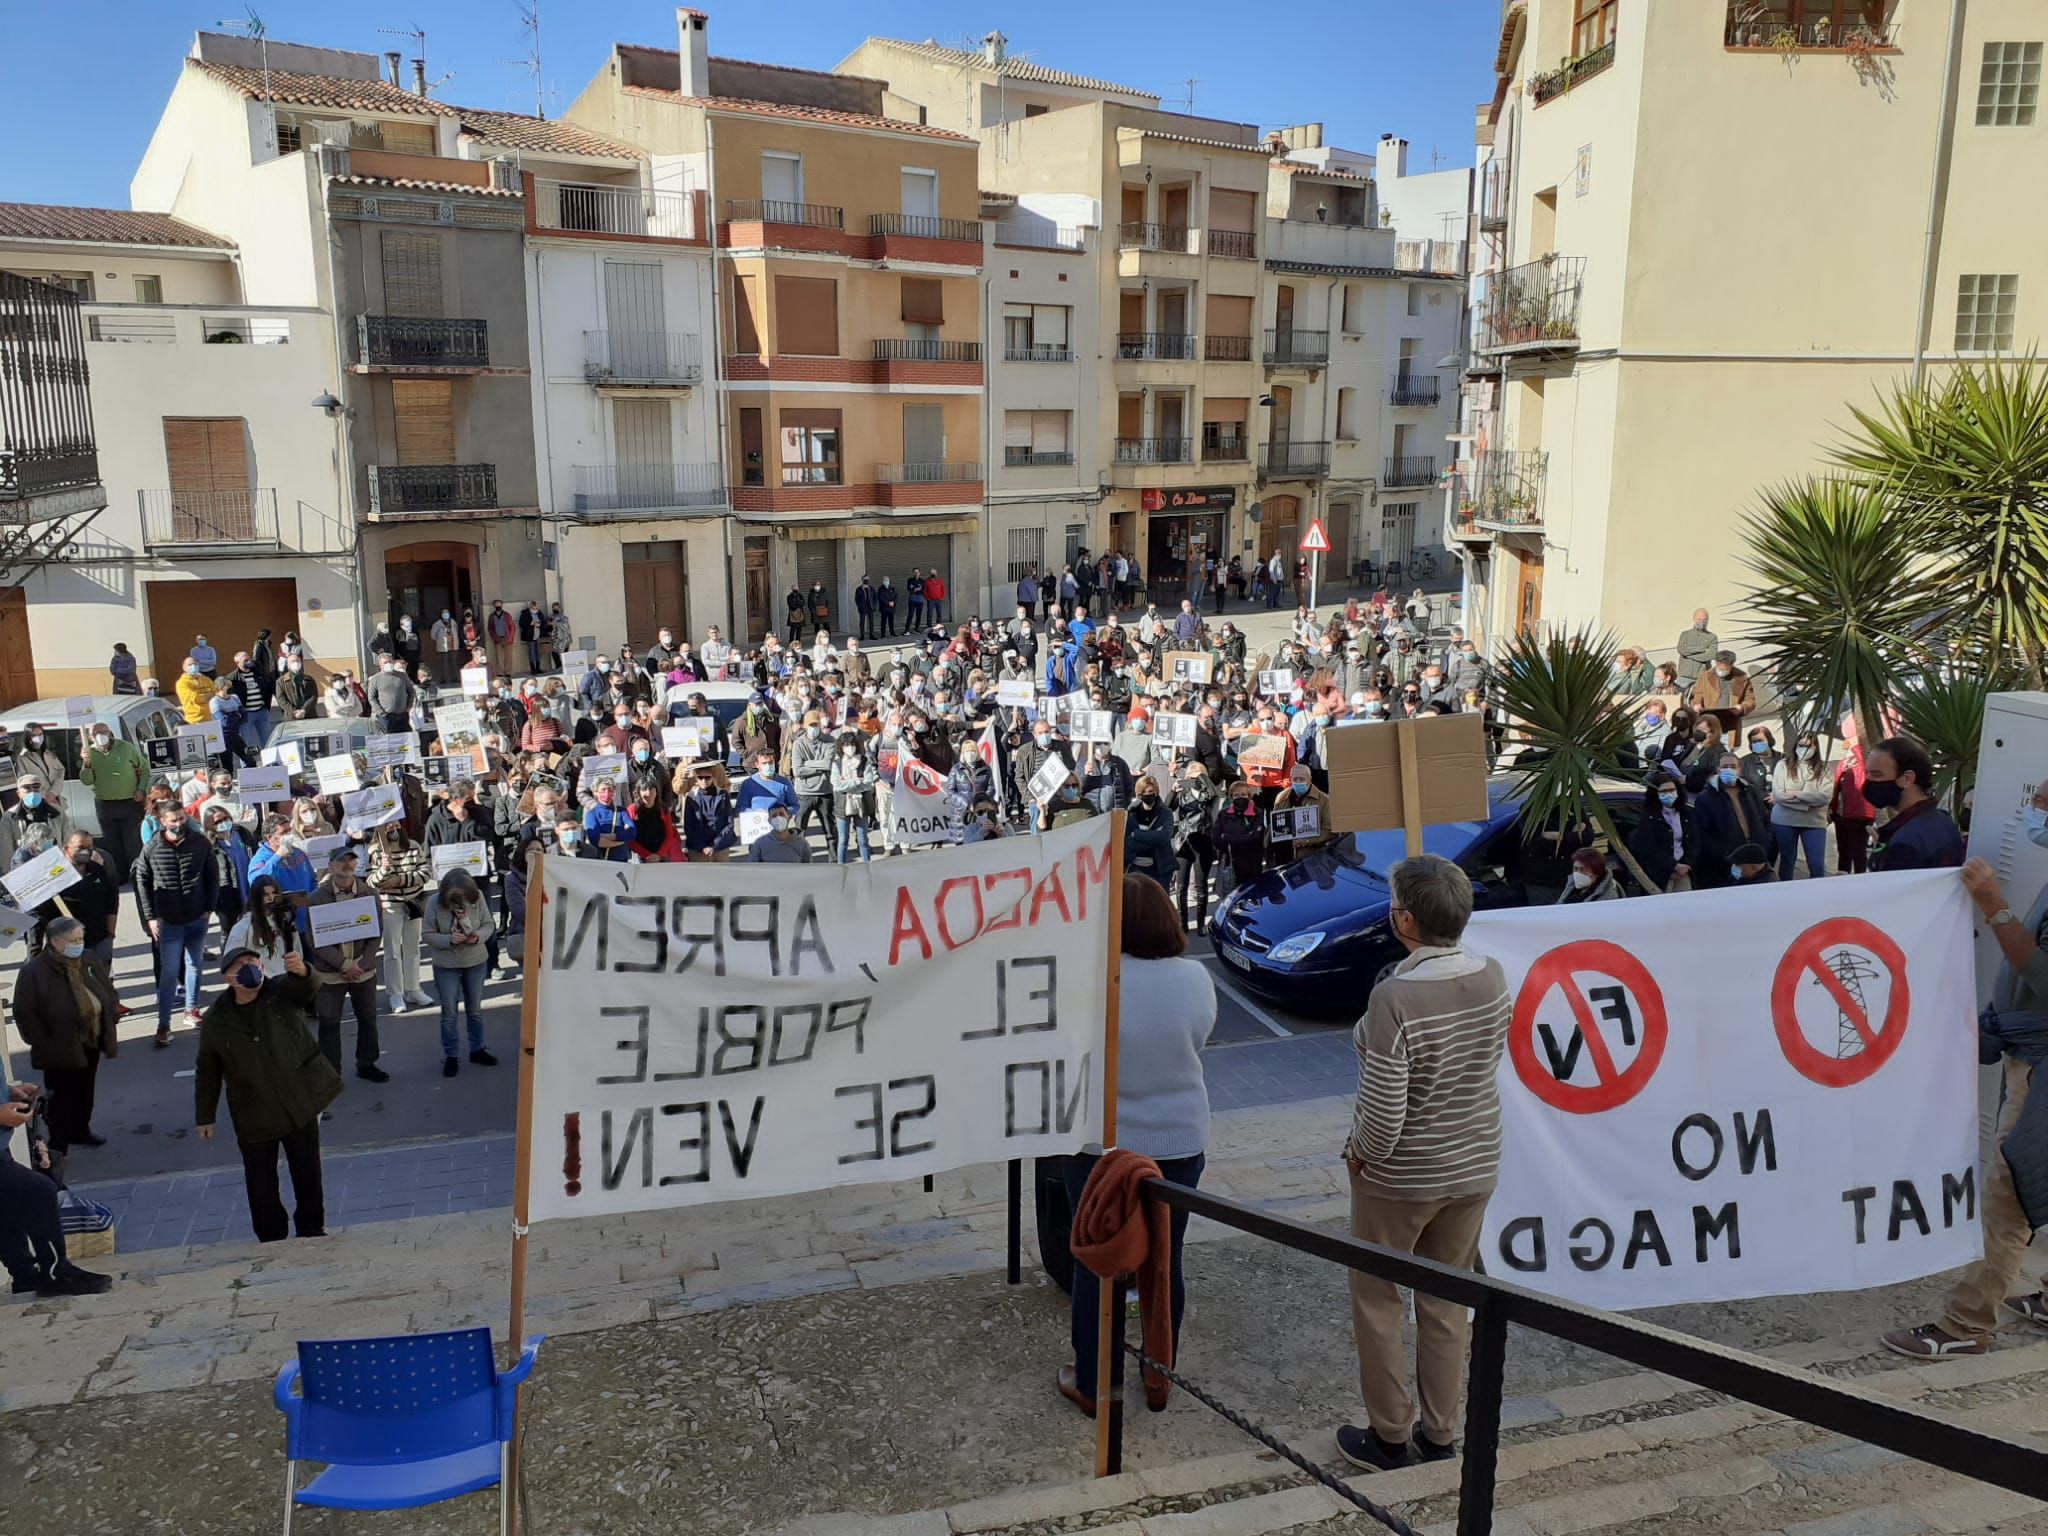 Una de las manifestaciones  contra el proyecto 'Magda' organizado en Les Coves de Vinrom.